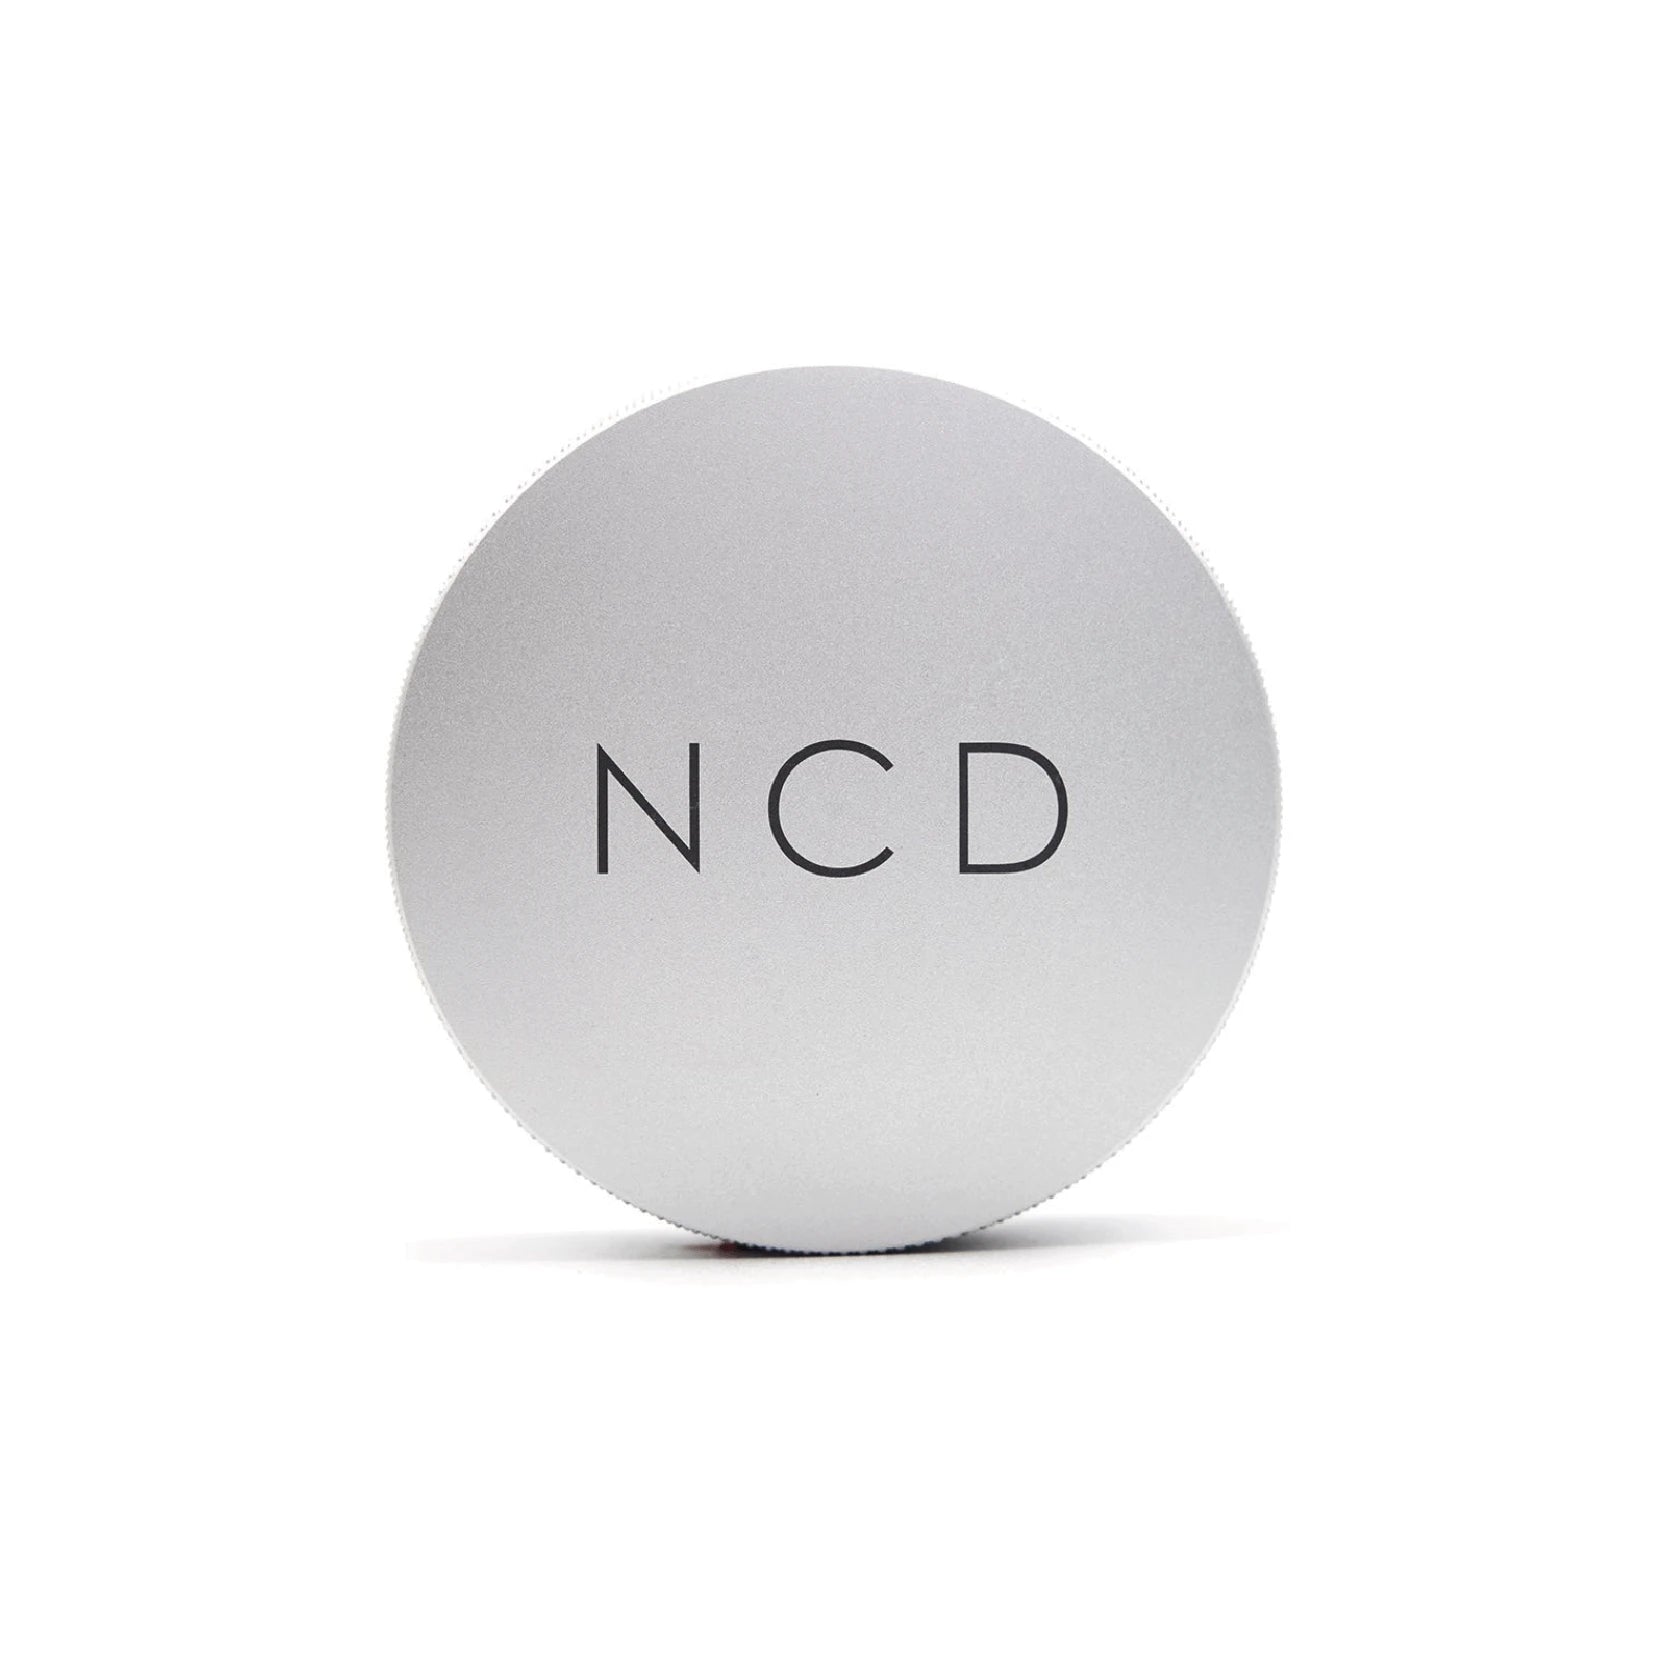 Nucleas Coffee Distributor NCD 58.5mm